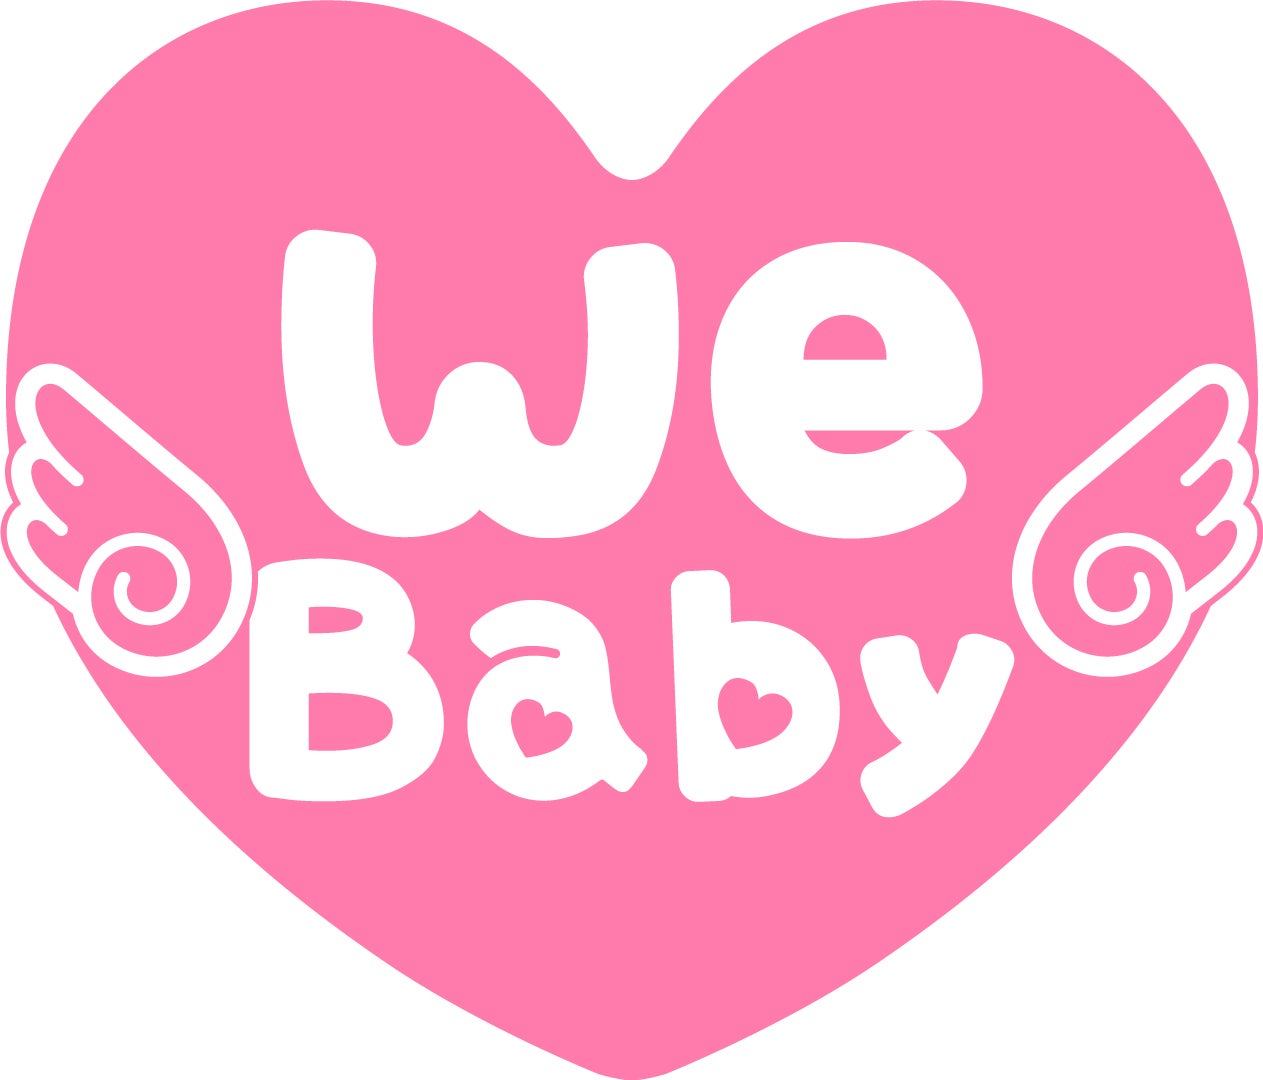 ハイブリッド母子健康手帳「ウィラバ®（WeLoveBaby®）」のパートナー企業に認定。ウィラバ®を通じて妊娠へ期待がもてる社会の実現を。のサブ画像1